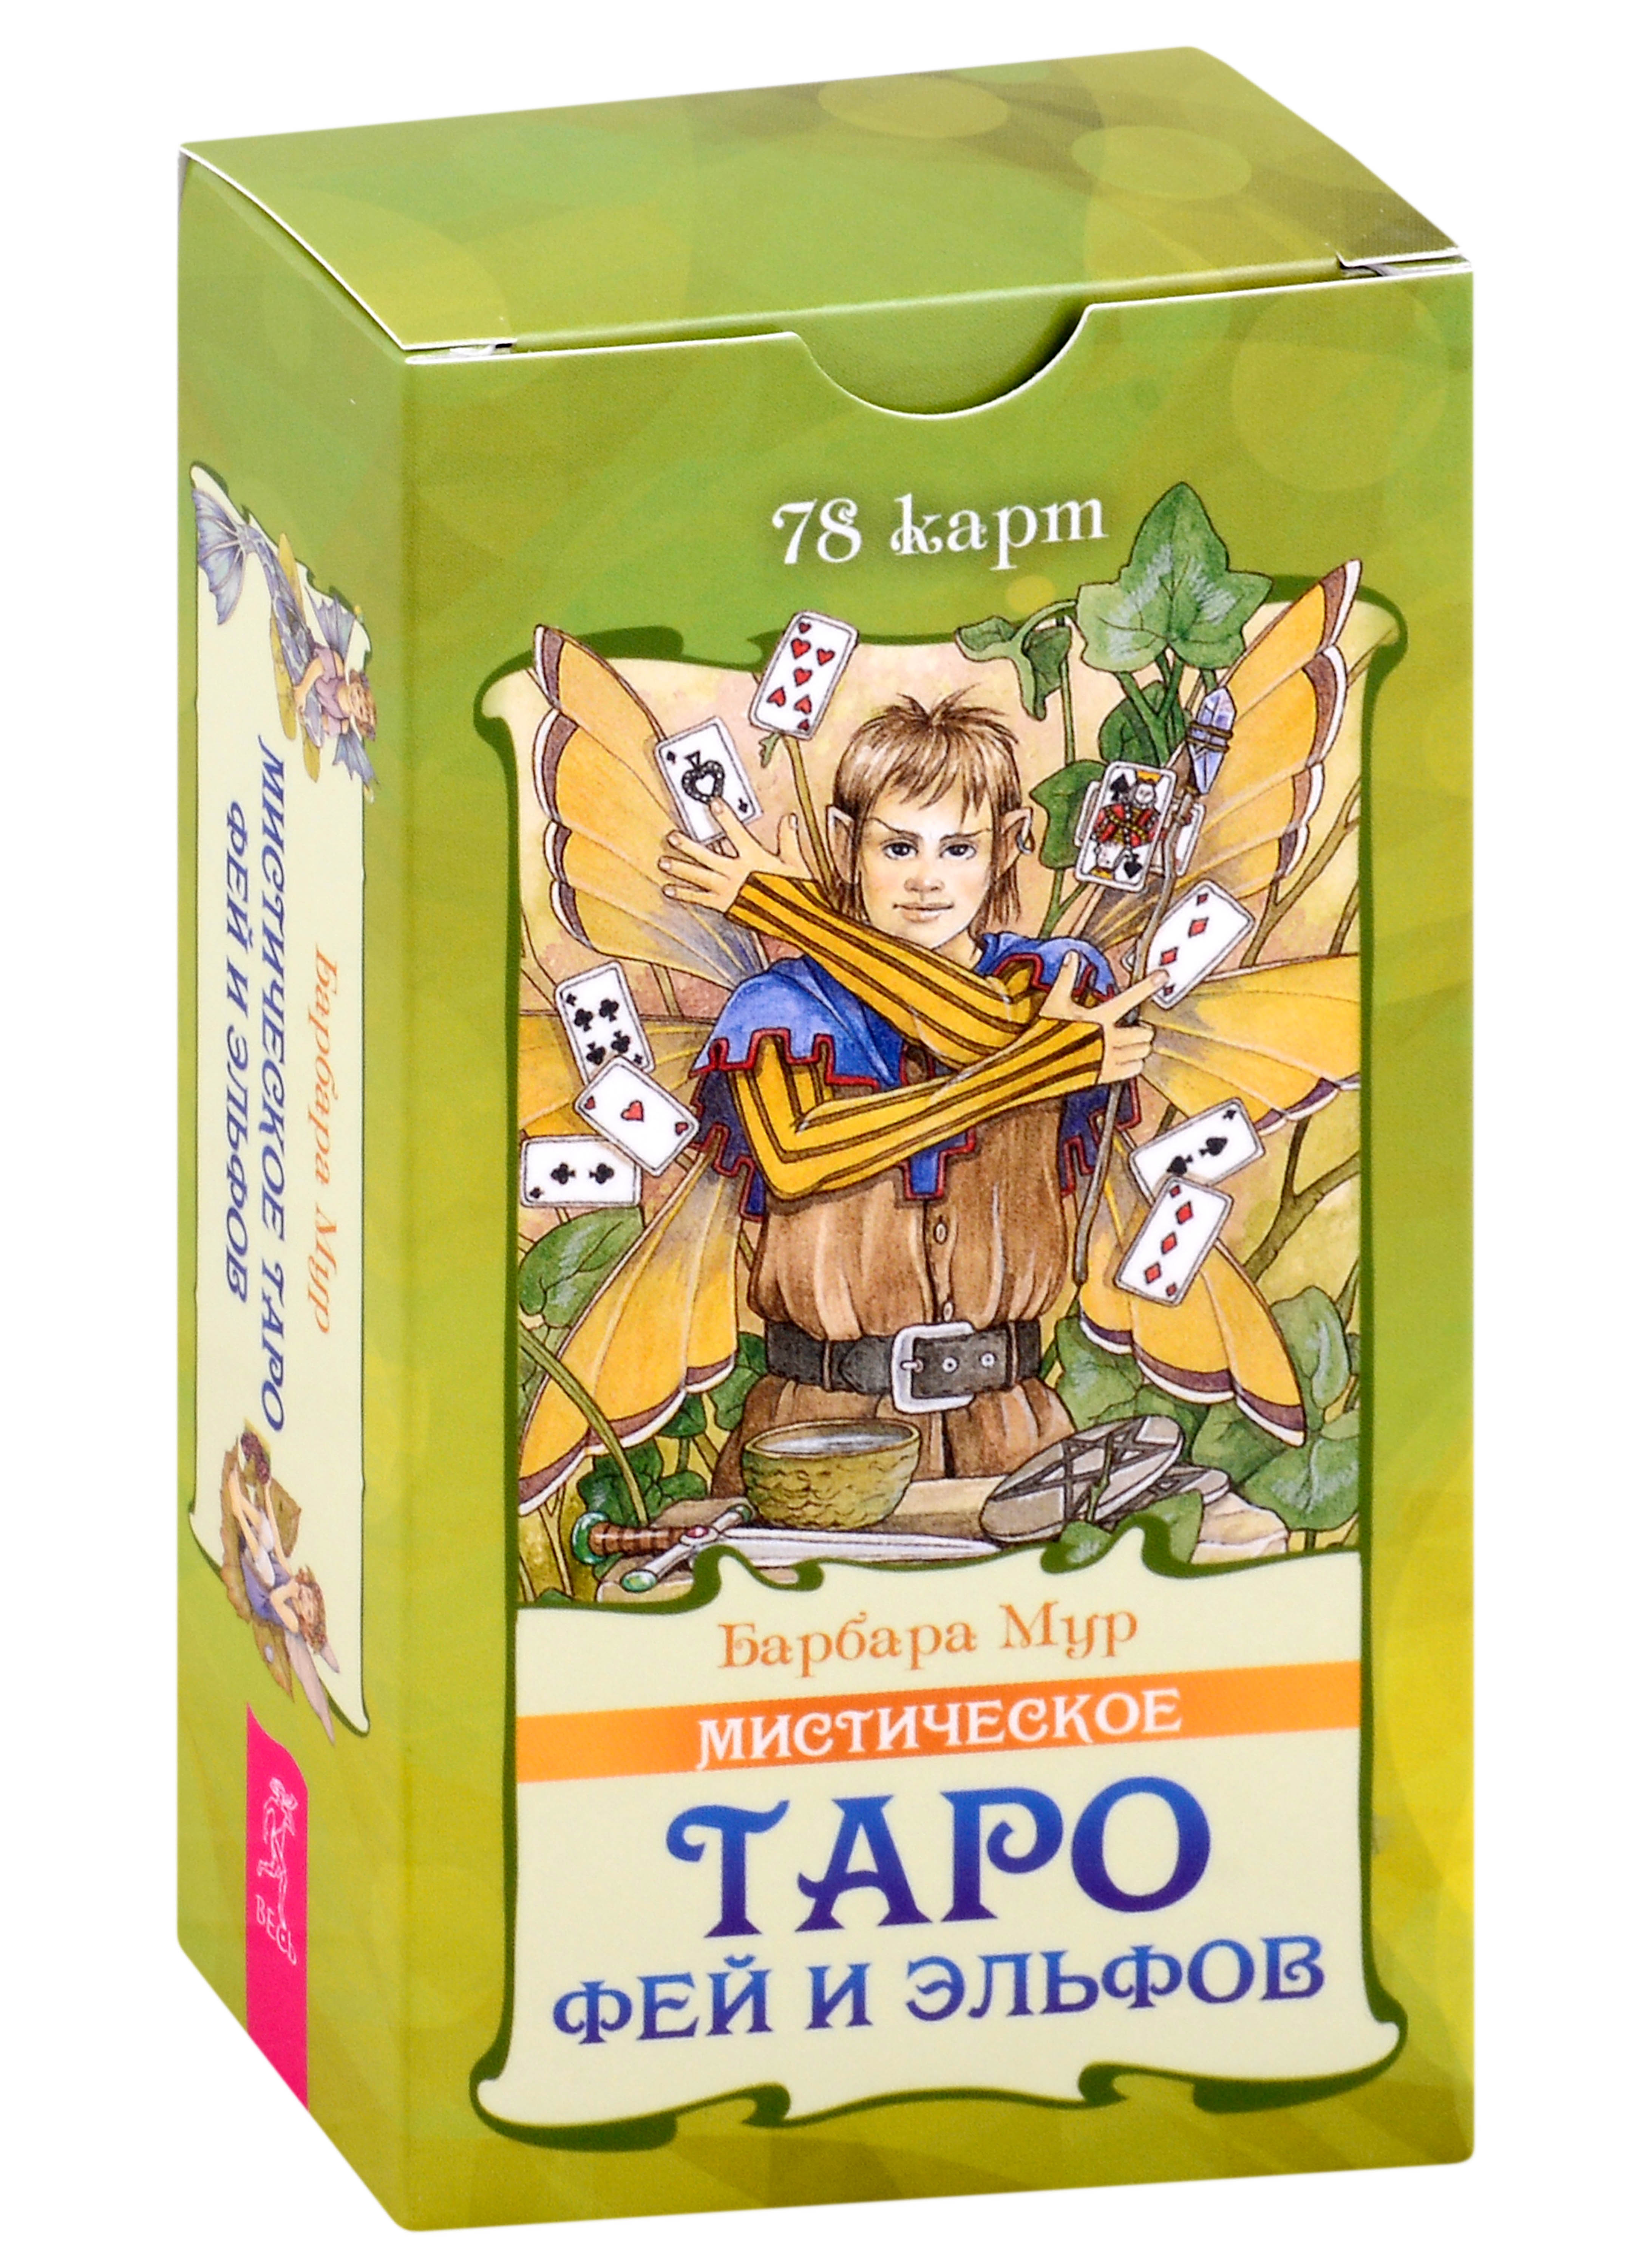 Мистическое Таро фей и эльфов (78 карт) (5015)